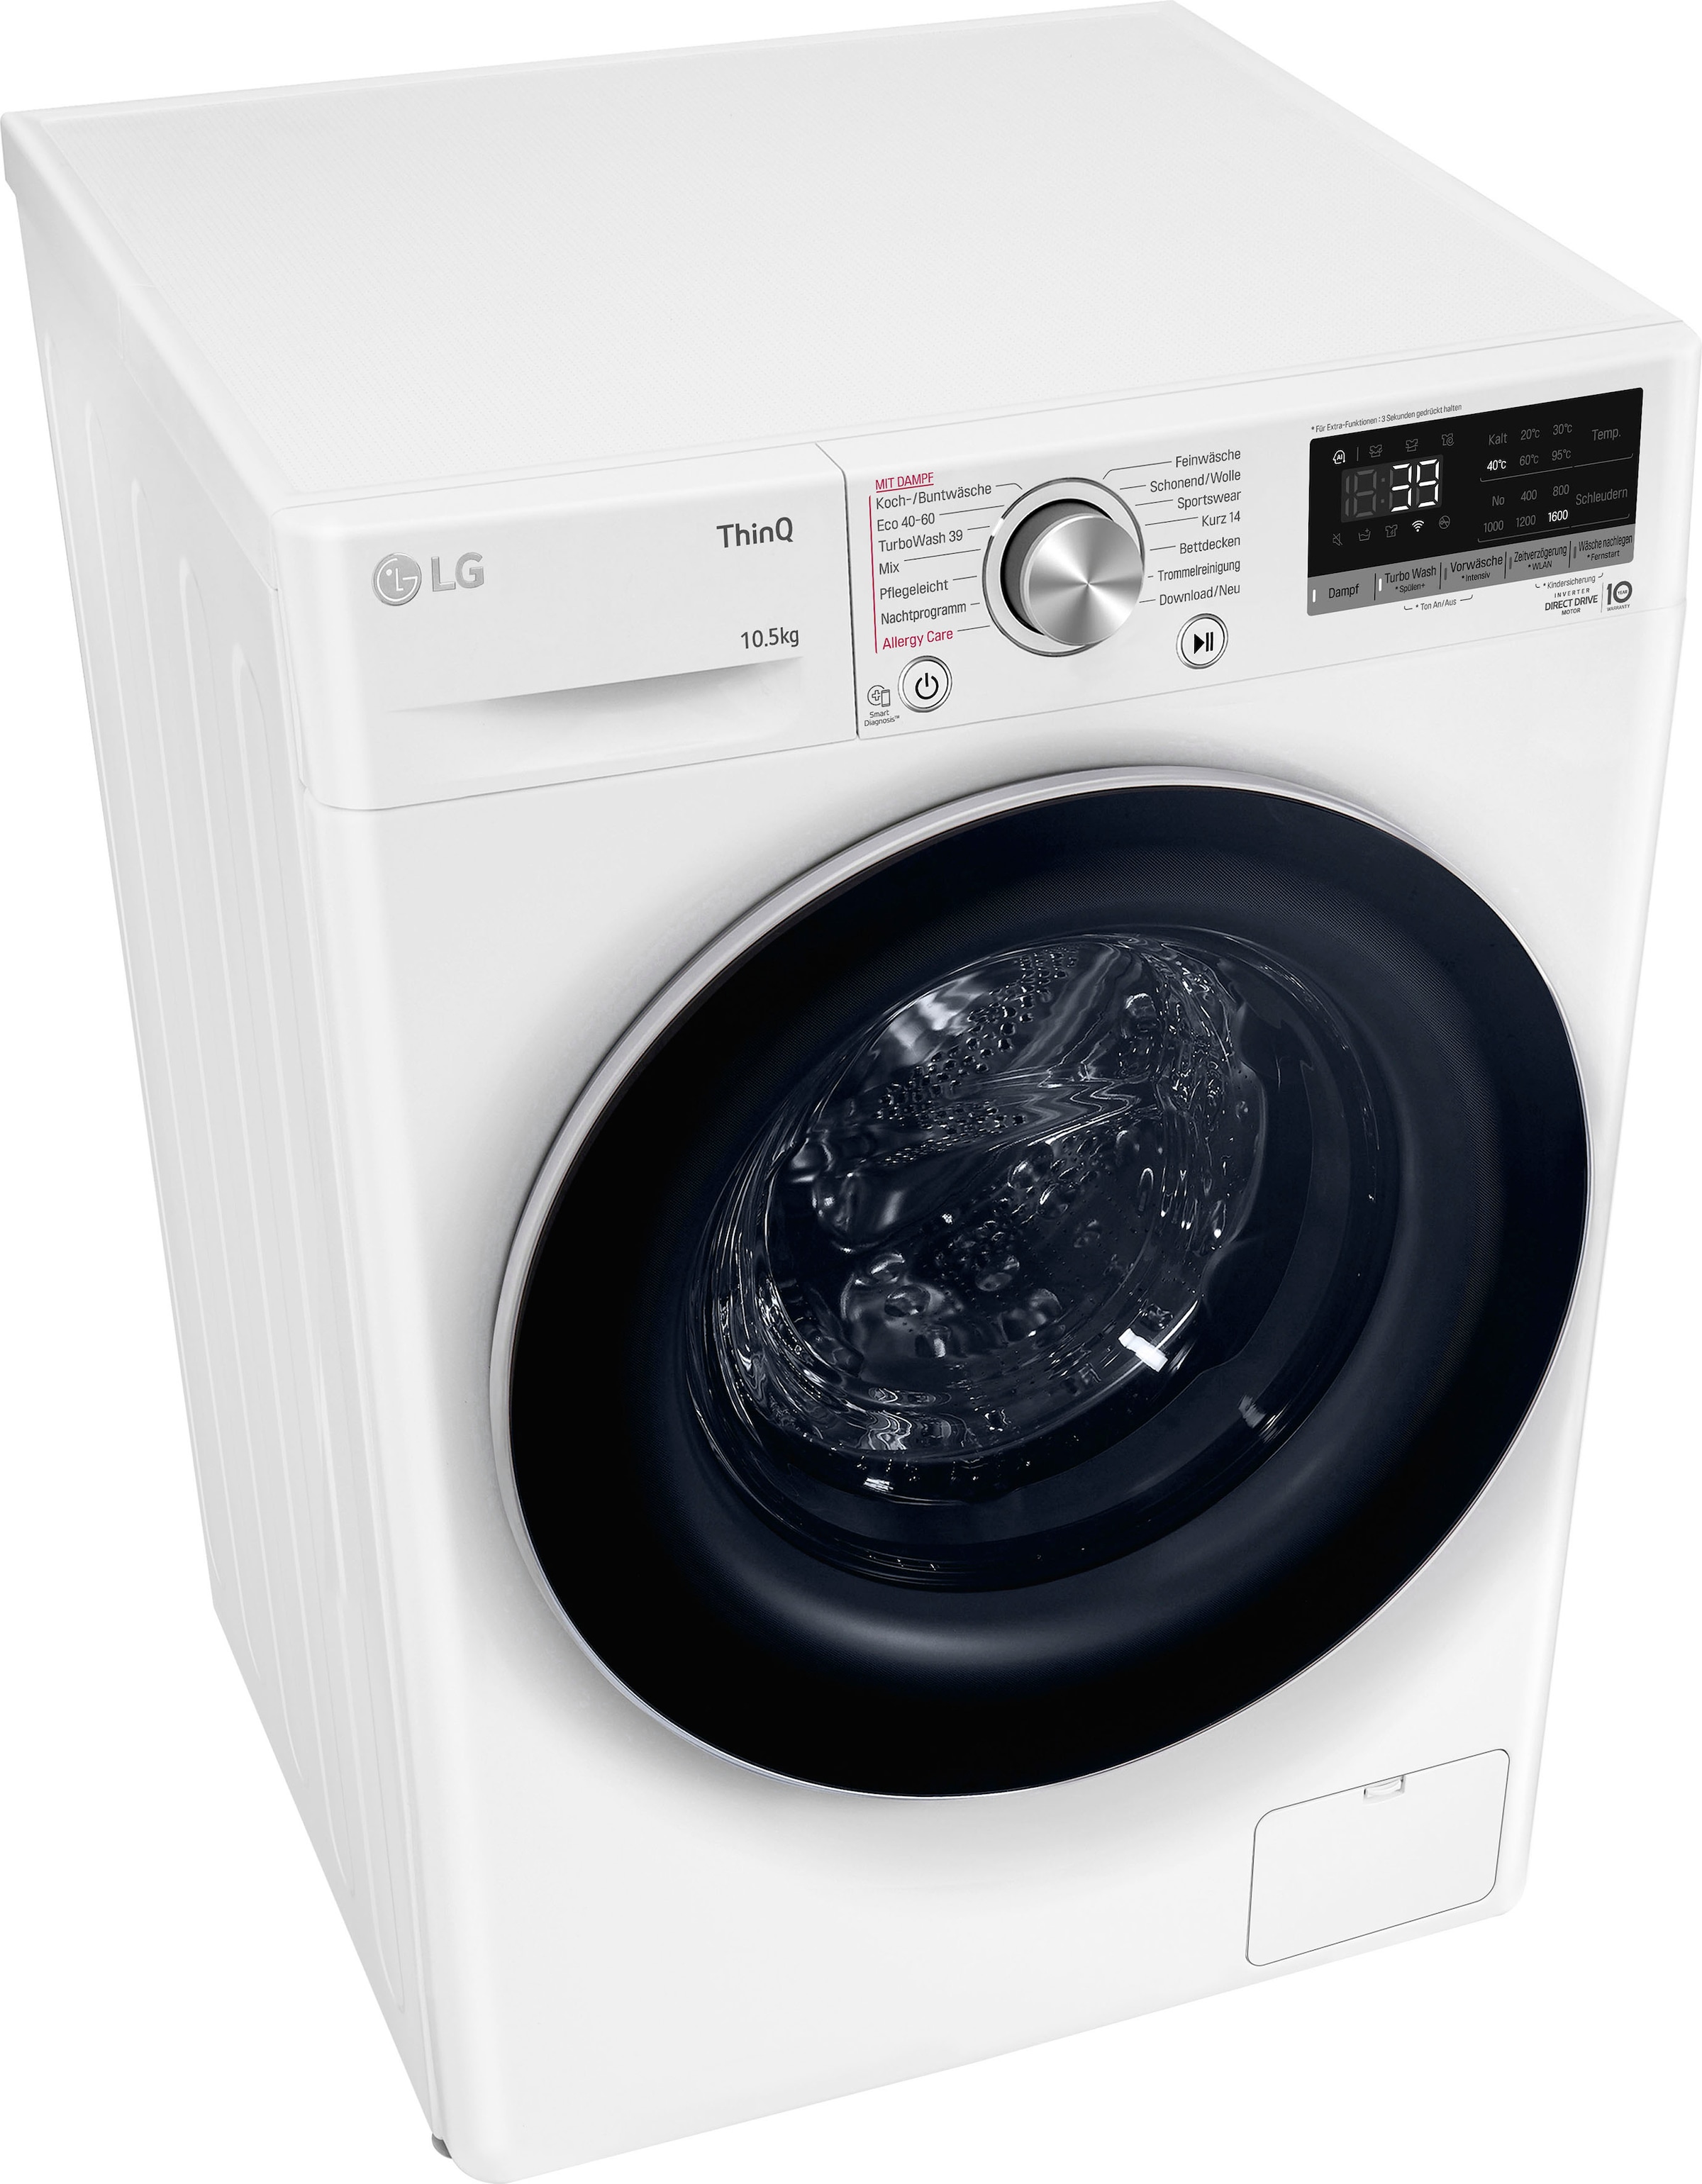 LG Waschmaschine »F6WV710P1«, F6WV710P1, 10,5 in nur Waschen TurboWash® Jahren 39 kg, U/min, Minuten XXL mit 1600 - Garantie 3